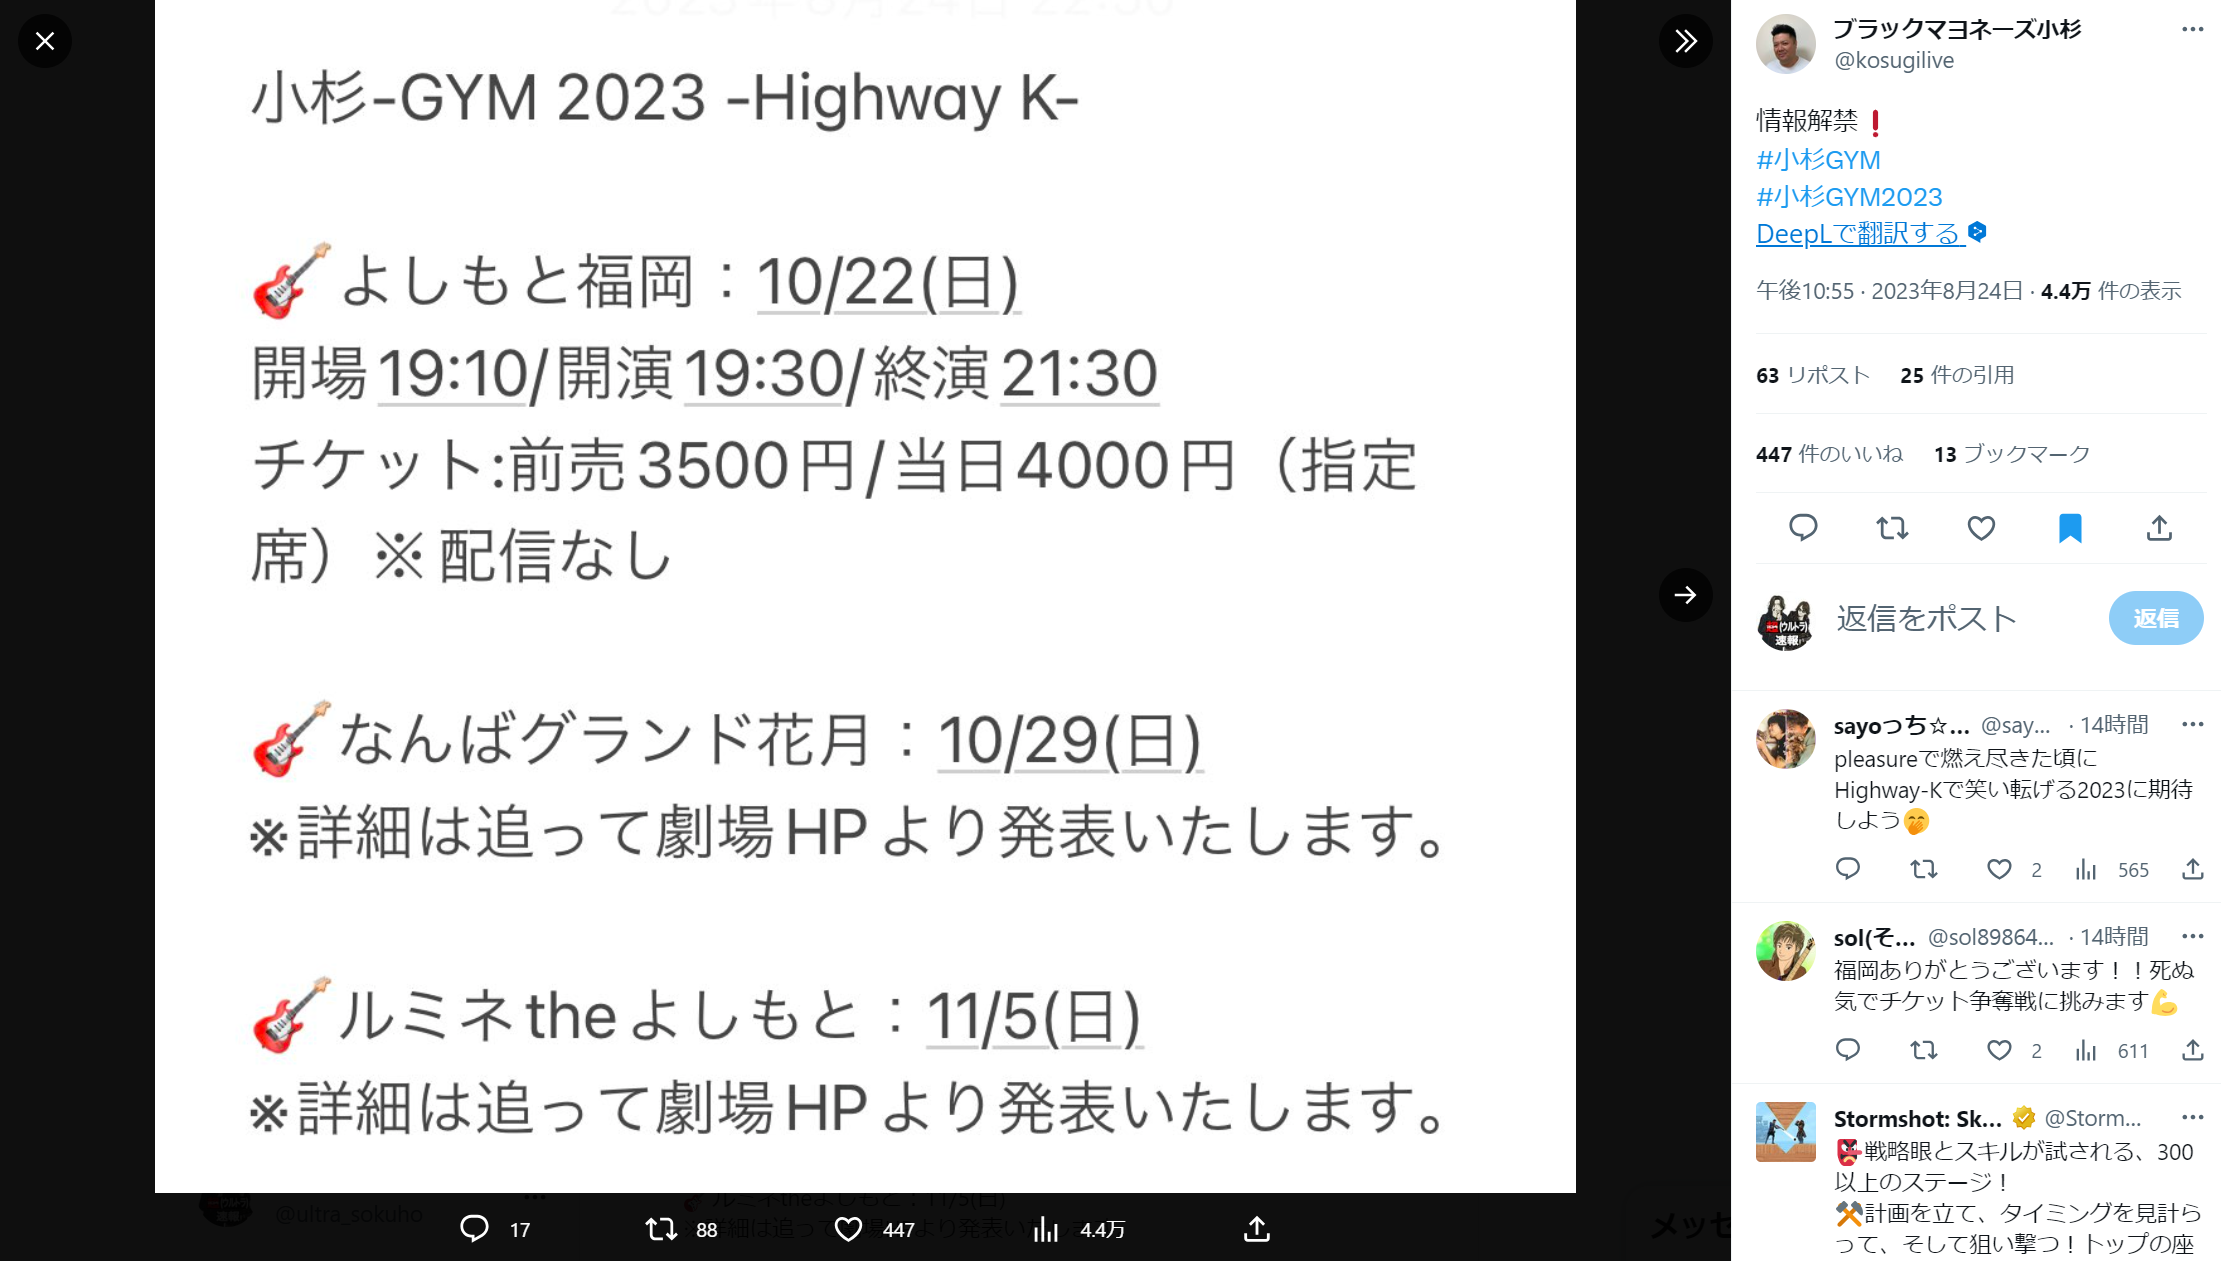 『小杉-GYM 2023 -Highway K-』の日程情報の画像